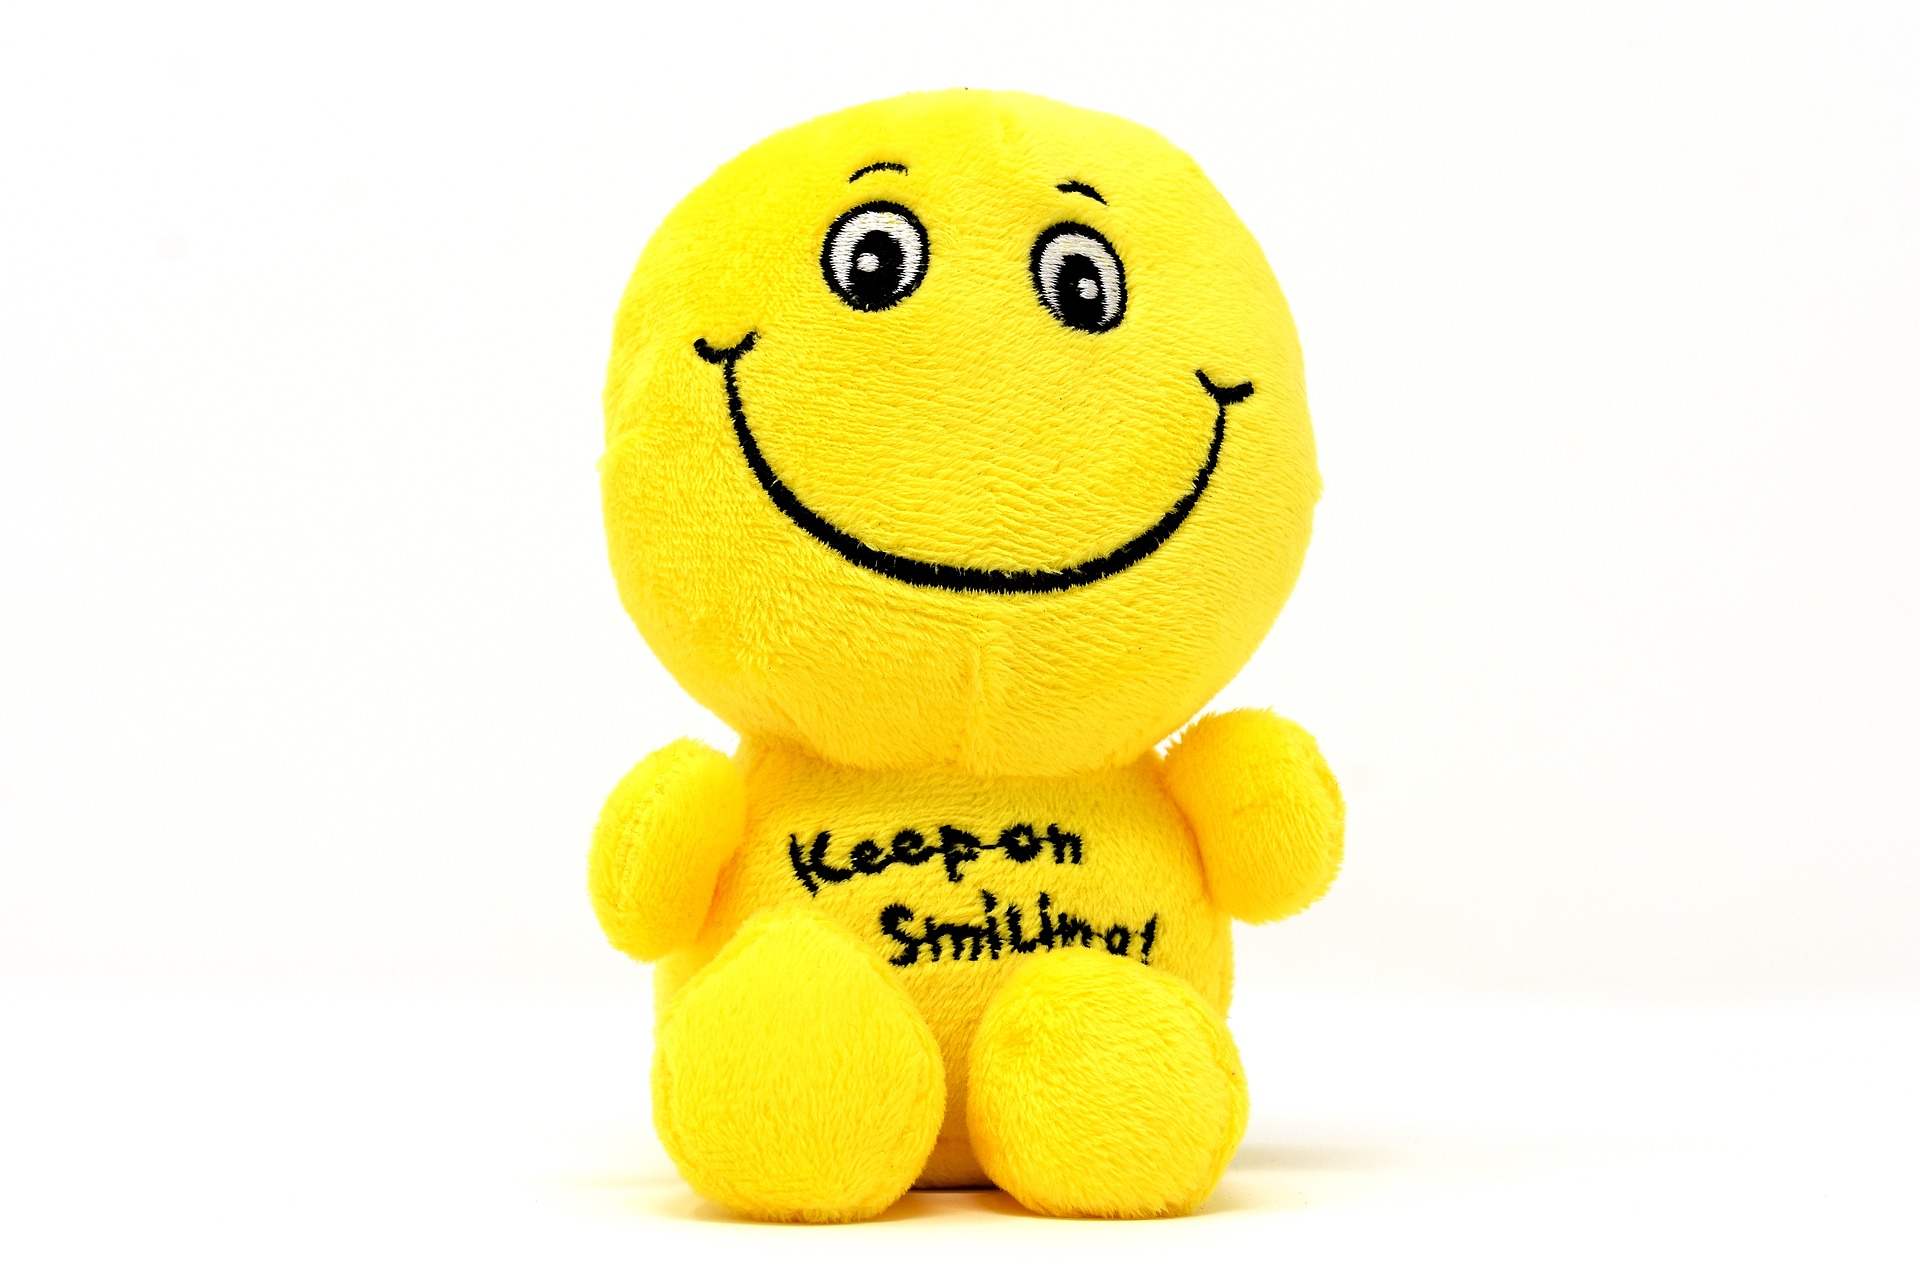 בובה צהובה מחייכת חיוך גדול